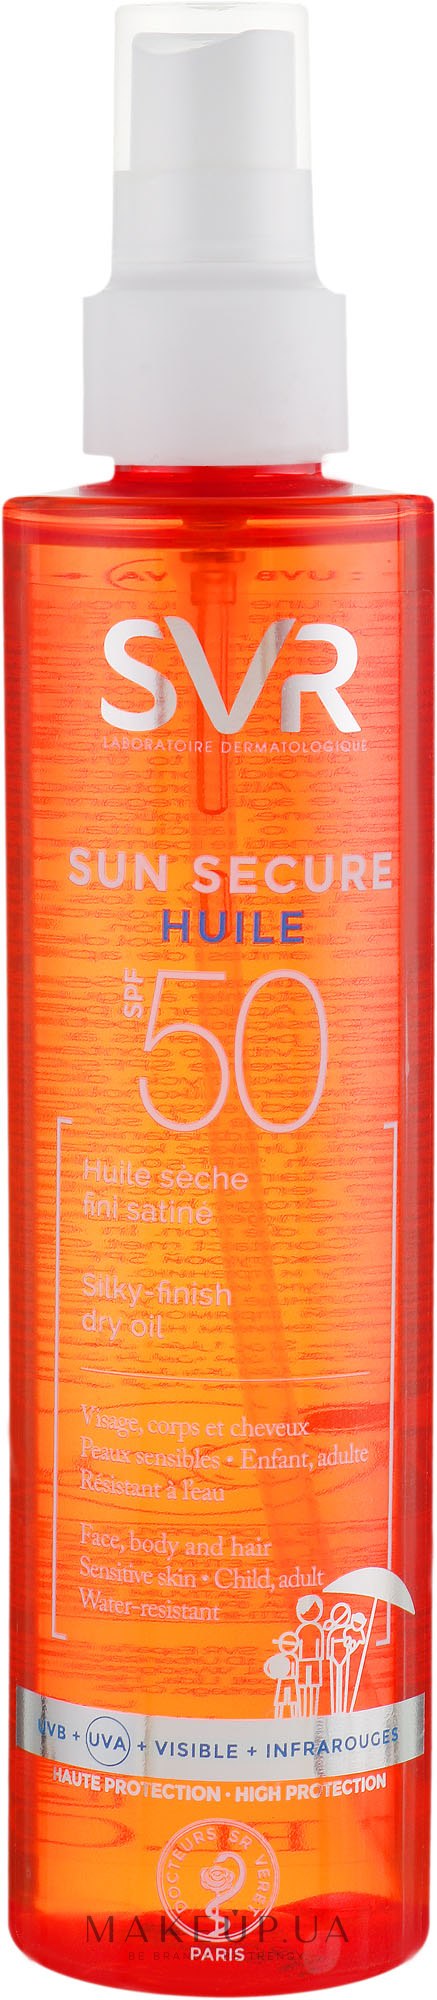 Сухое масло 200. SVR Sun secure huile SPF 50. SVR Sun secure Blur SPF 50. Эстель масло для тела солнцезащит. Масло для тела Урьяж для загара.